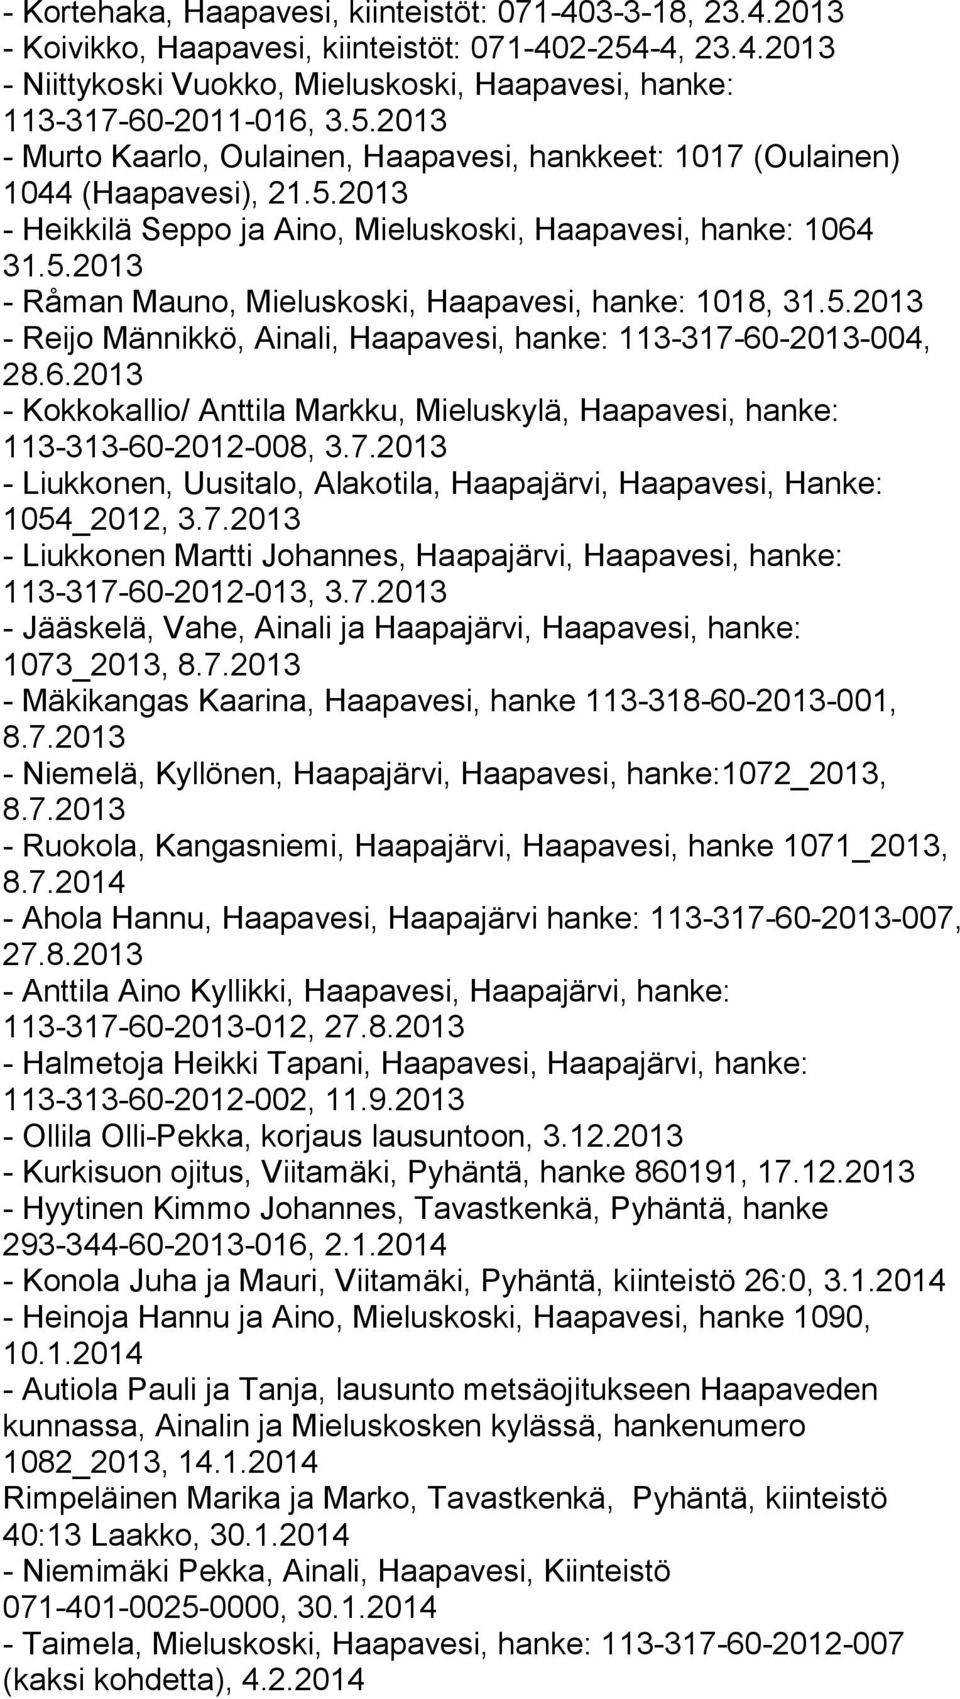 6.2013 - Kokkokallio/ Anttila Markku, Mieluskylä, Haapavesi, hanke: 113-313-60-2012-008, 3.7.2013 - Liukkonen, Uusitalo, Alakotila, Haapajärvi, Haapavesi, Hanke: 1054_2012, 3.7.2013 - Liukkonen Martti Johannes, Haapajärvi, Haapavesi, hanke: 113-317-60-2012-013, 3.